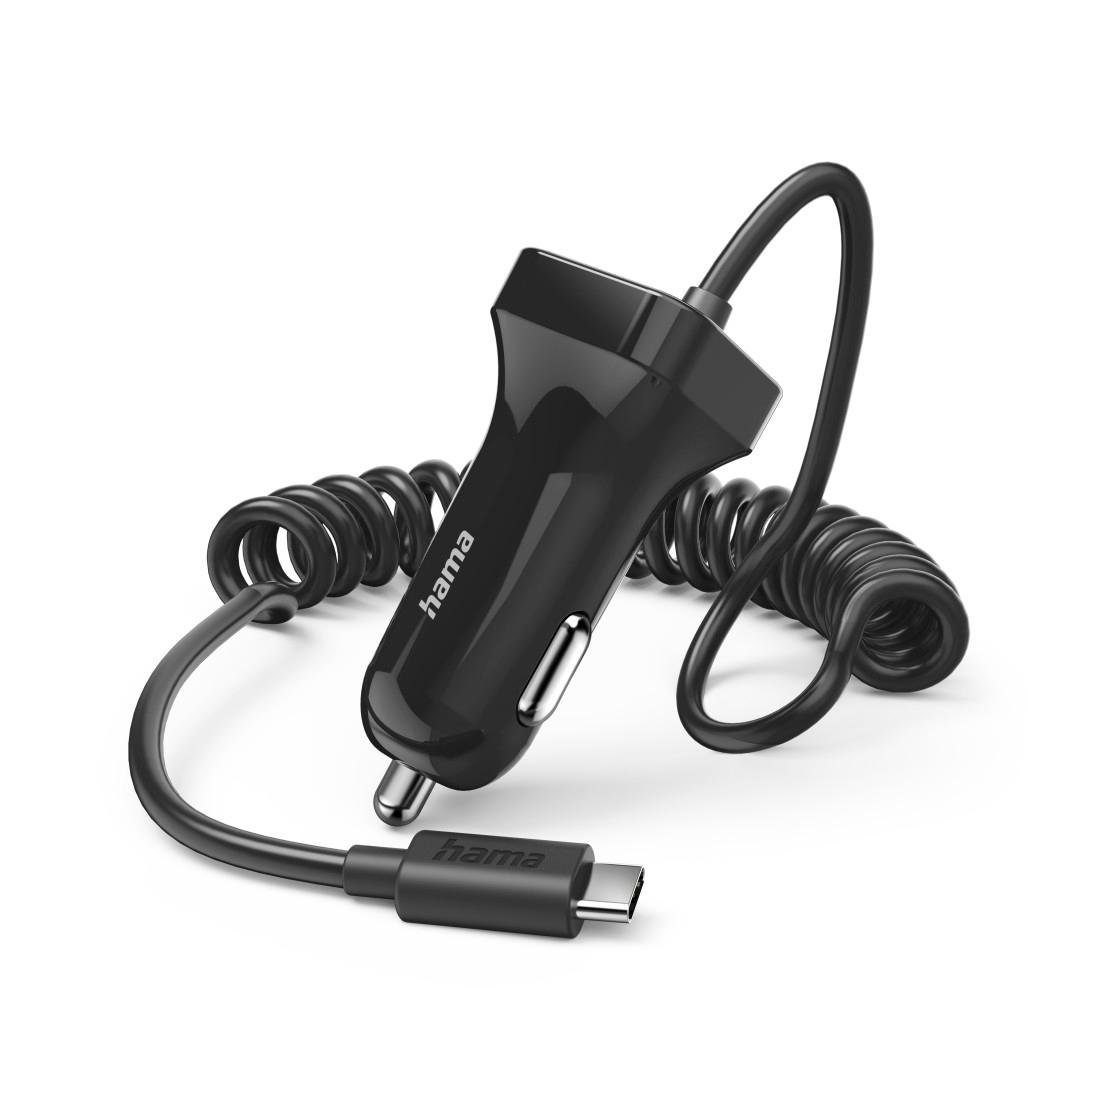 Hama Auto Ladegerät mit USB C Anschluss, 12 W, 1,0 m, Schwarz Smartphone- Ladegerät, Optimal im Kfz: kleines und leichtes Ladegerät für die  Zigarettenanzünder-Buchse